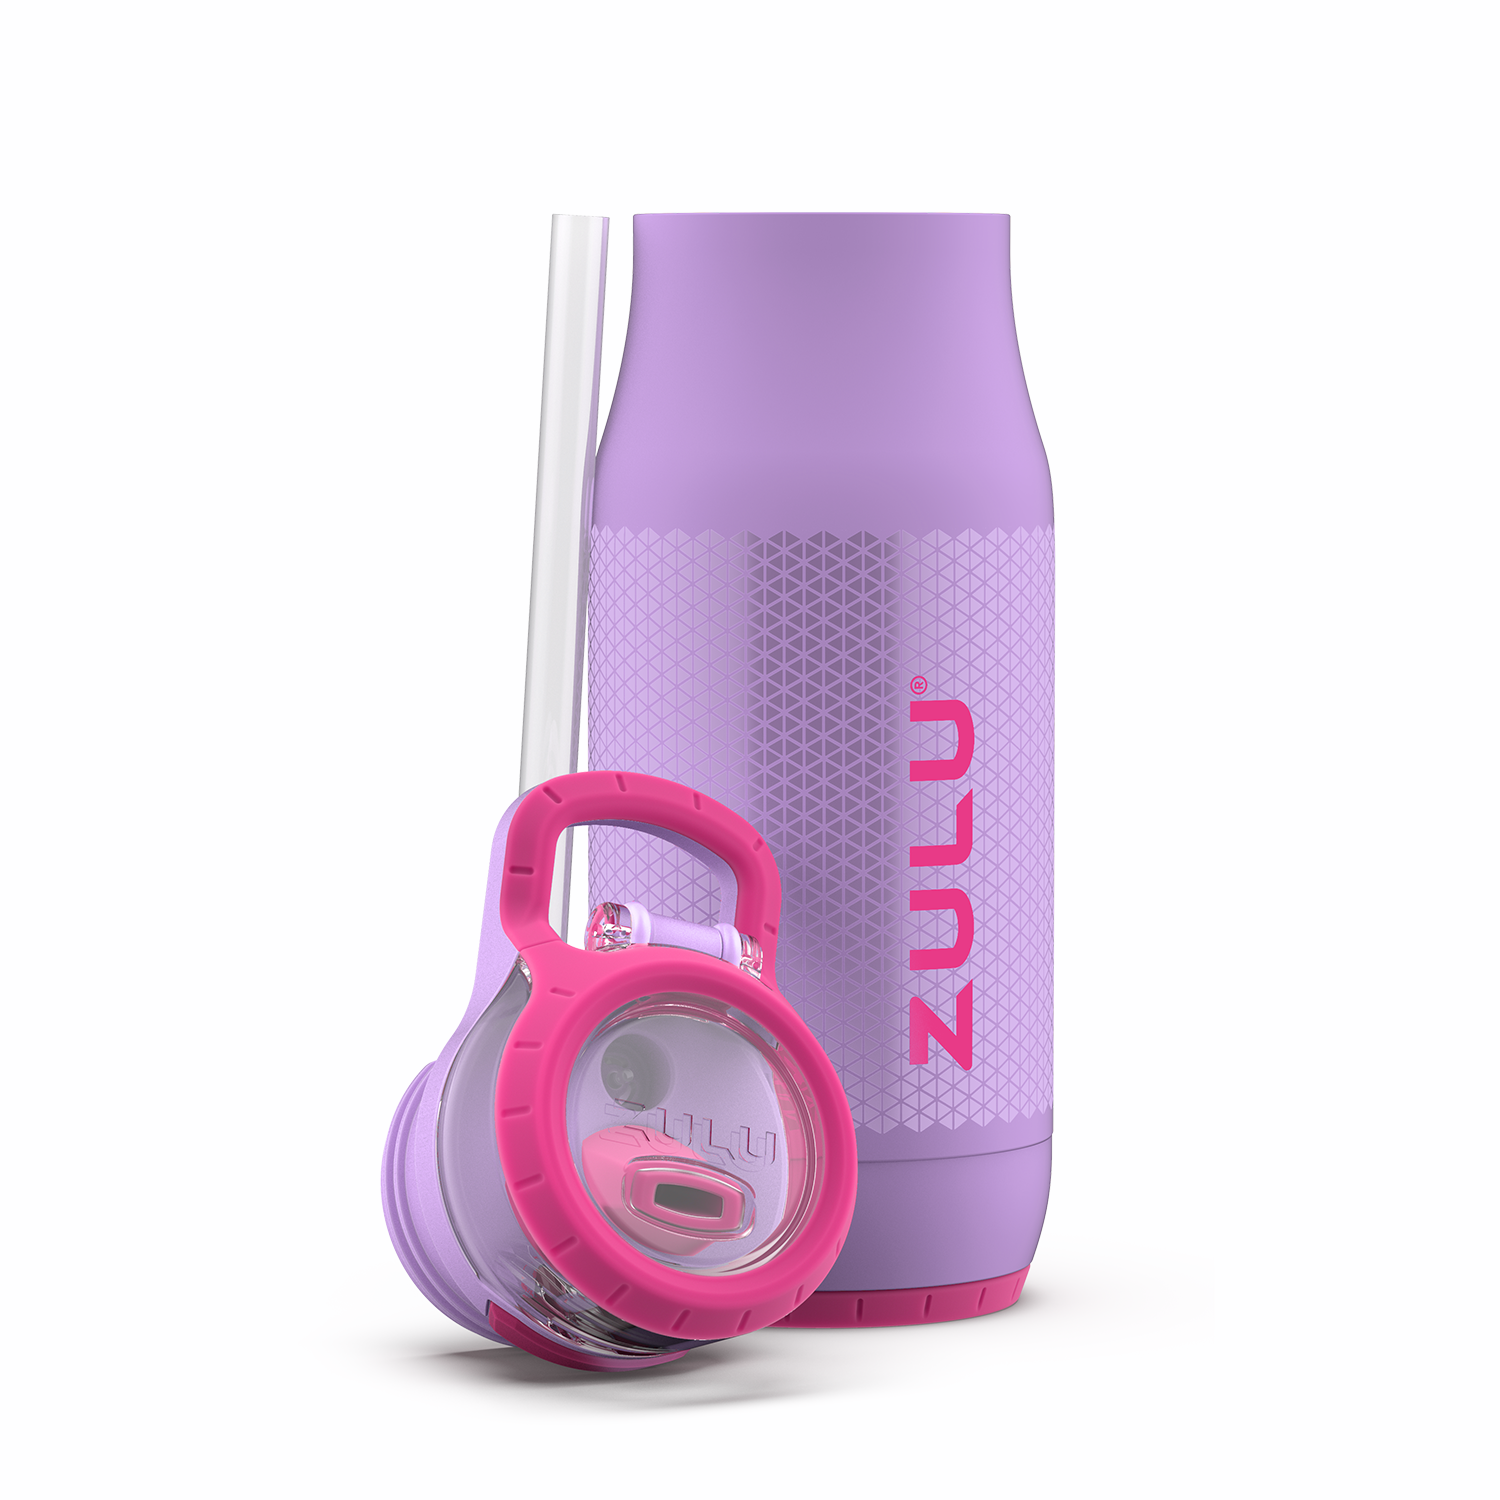 Zulu Purple/Pink Chase Stainless Steel Water Bottle - 14 oz